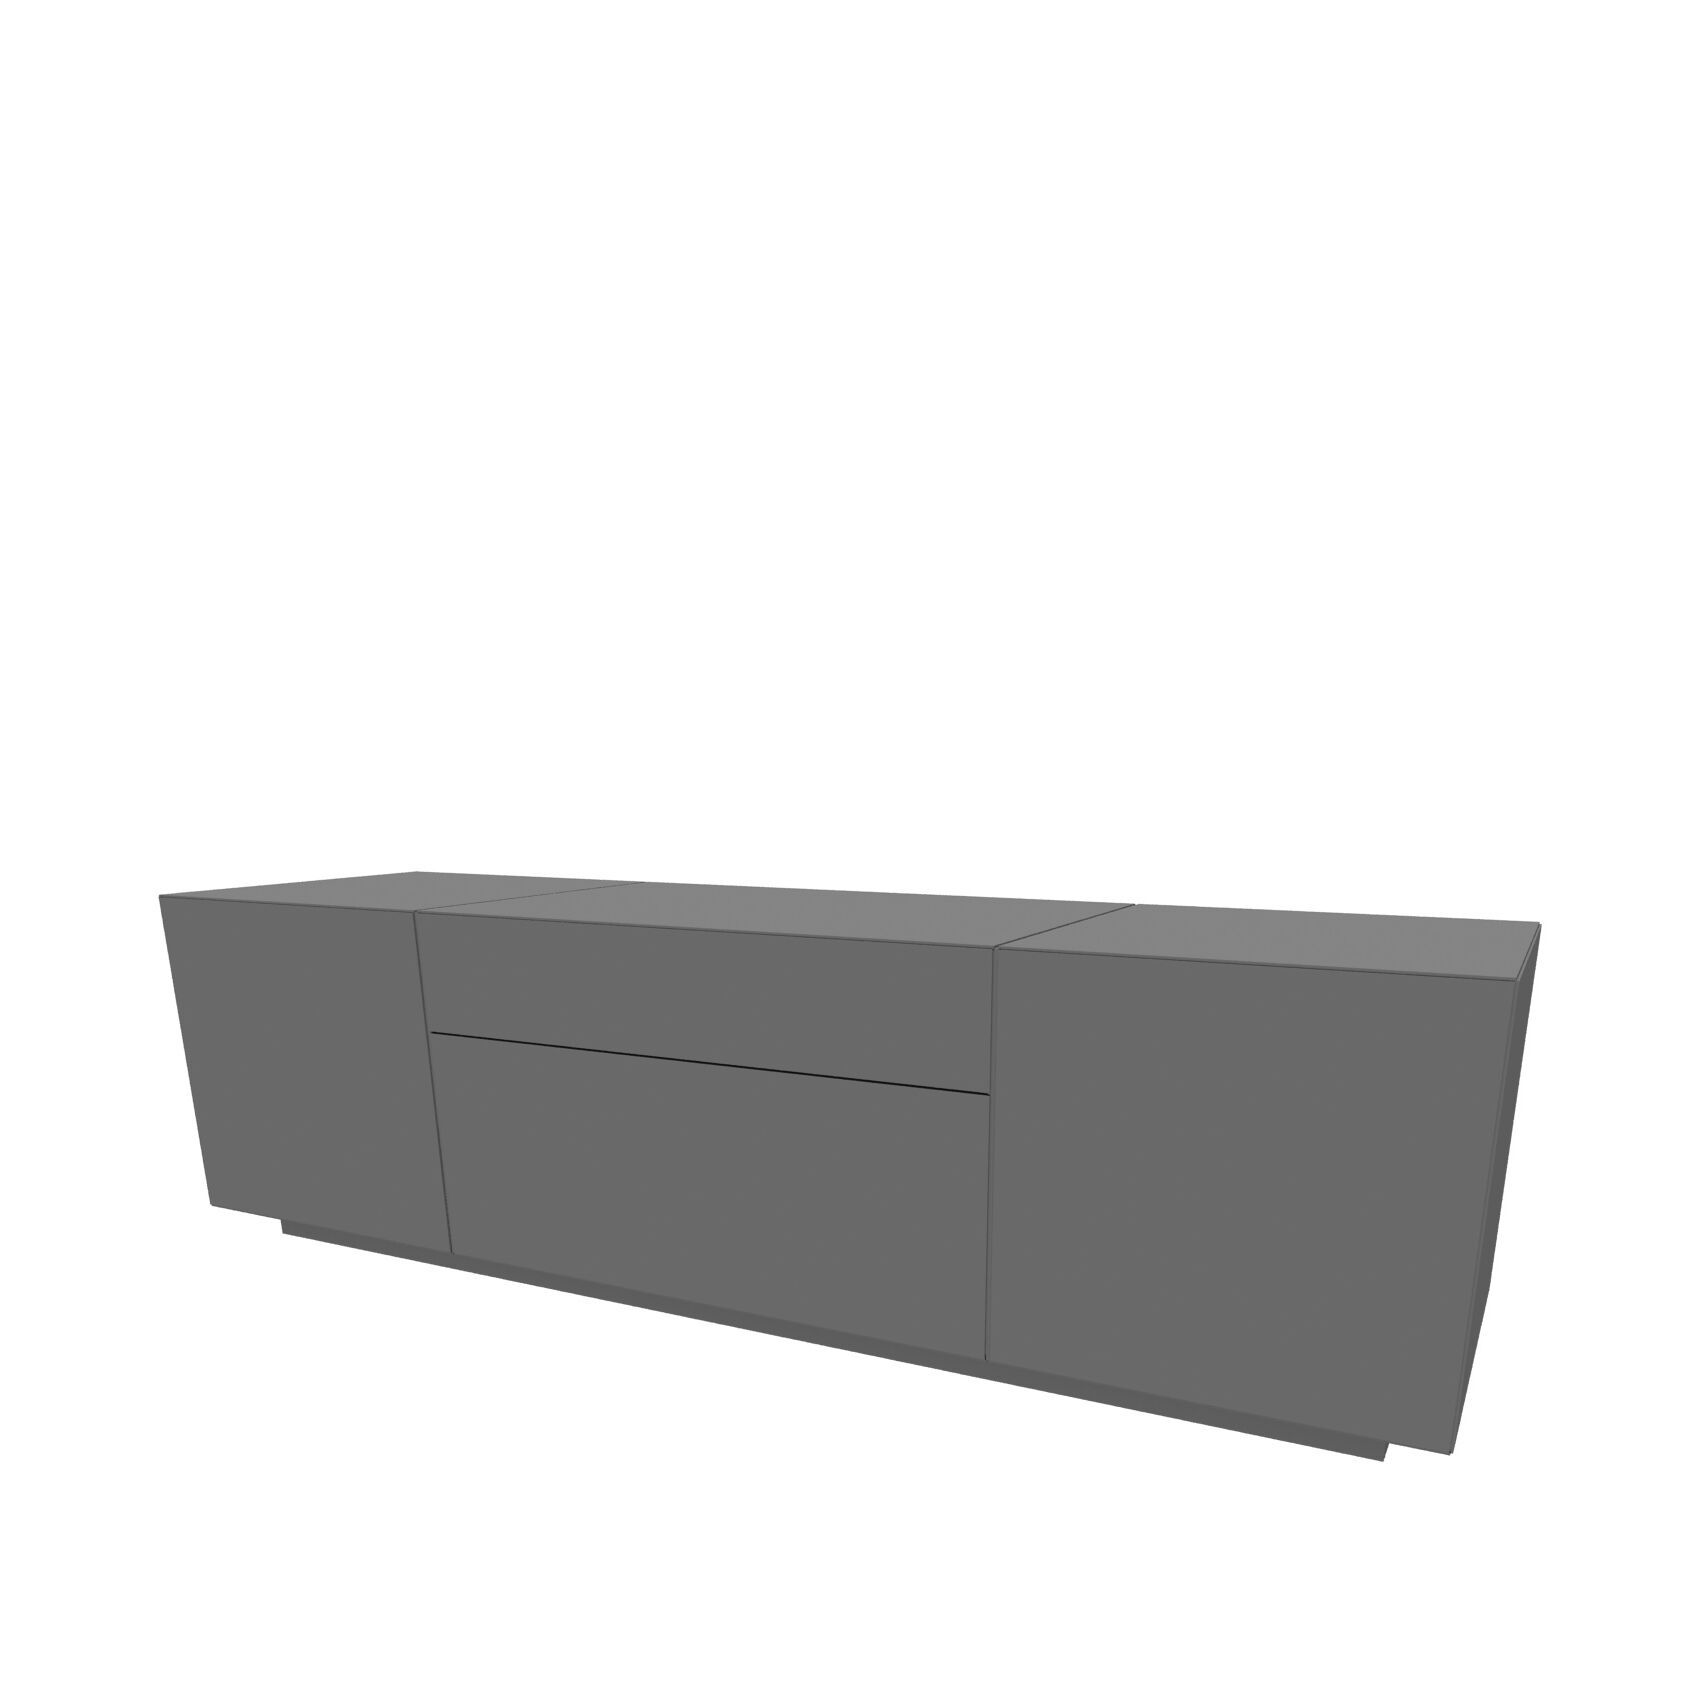 02-WK-Headoffice Mono_Sideboard_3558.tif